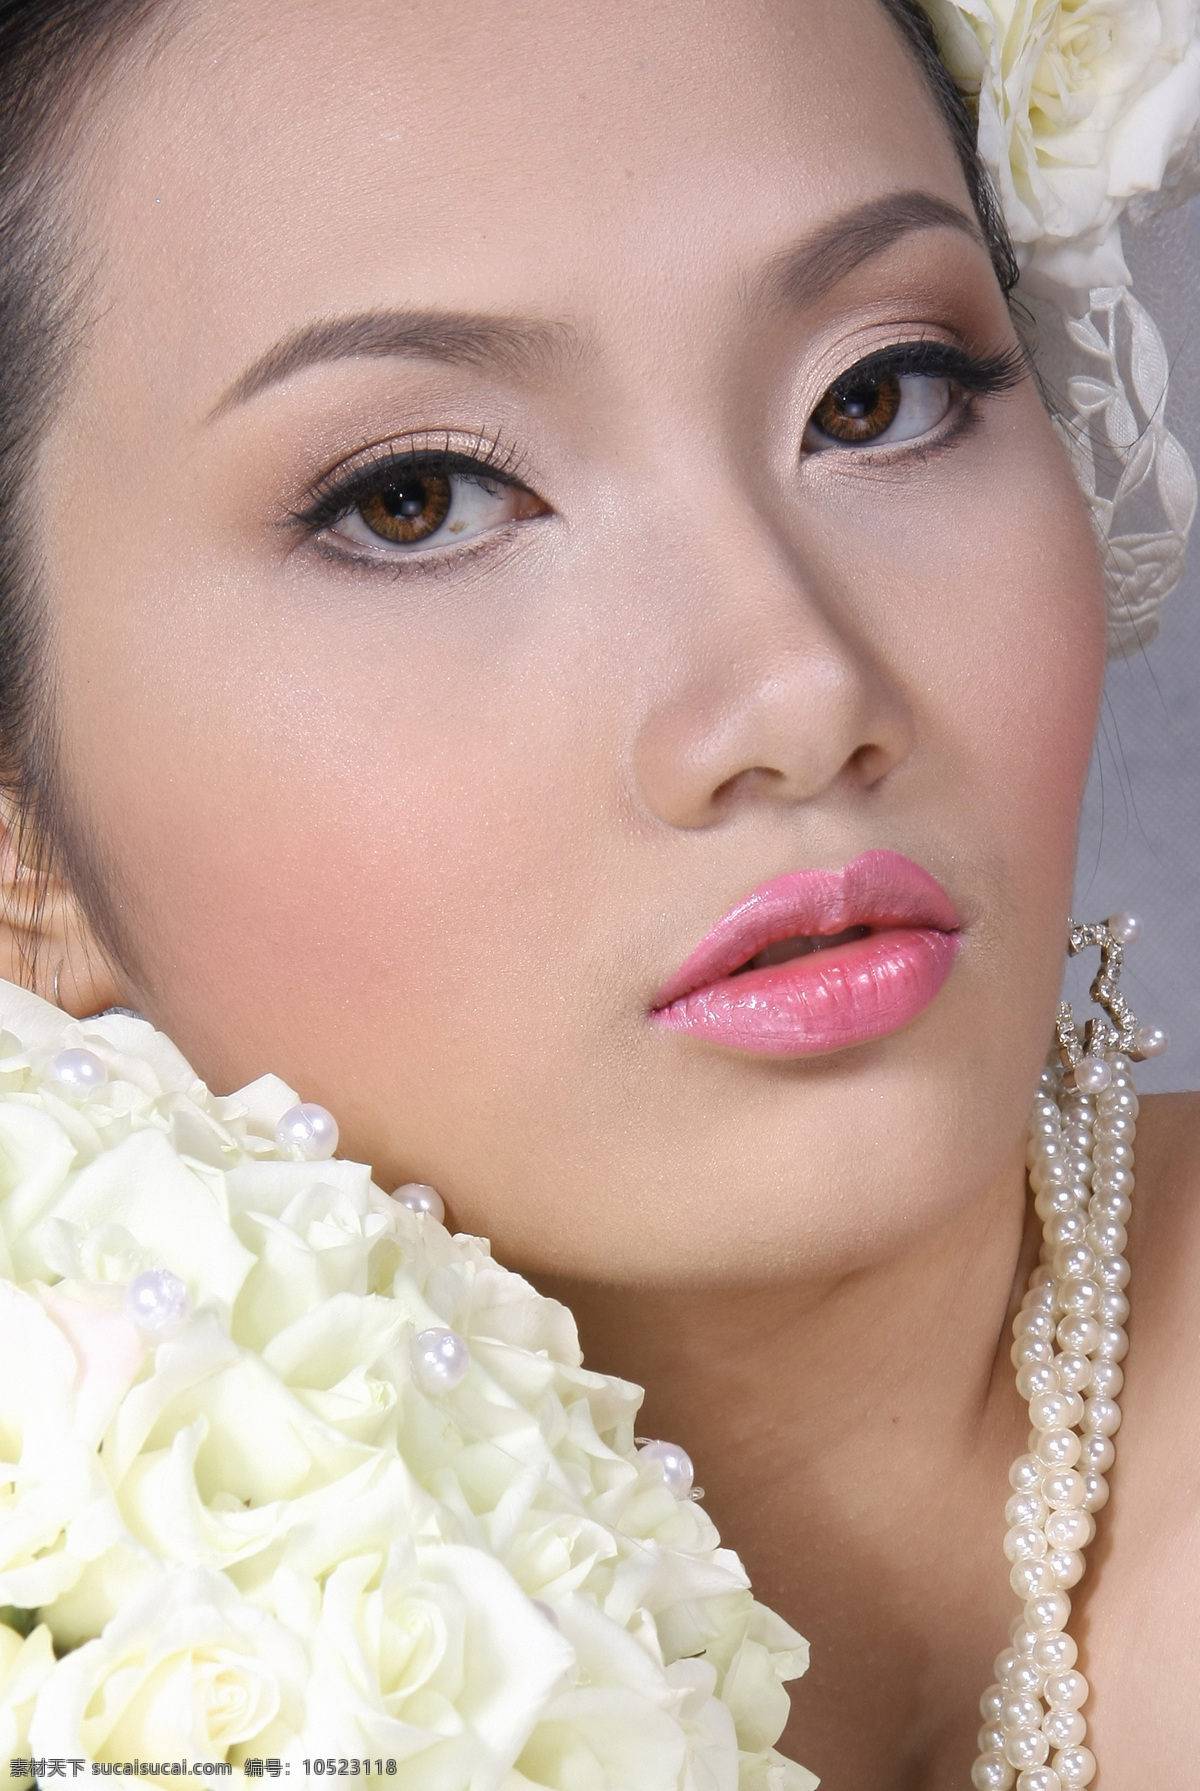 亚洲美女写真 越南 美容素材 高清晰 超人气 越南美女 时装 模特 女孩 漂亮 美丽 公主 清纯 青春 甜美 气质 亚洲美女 写真集 人物摄影 人物图库